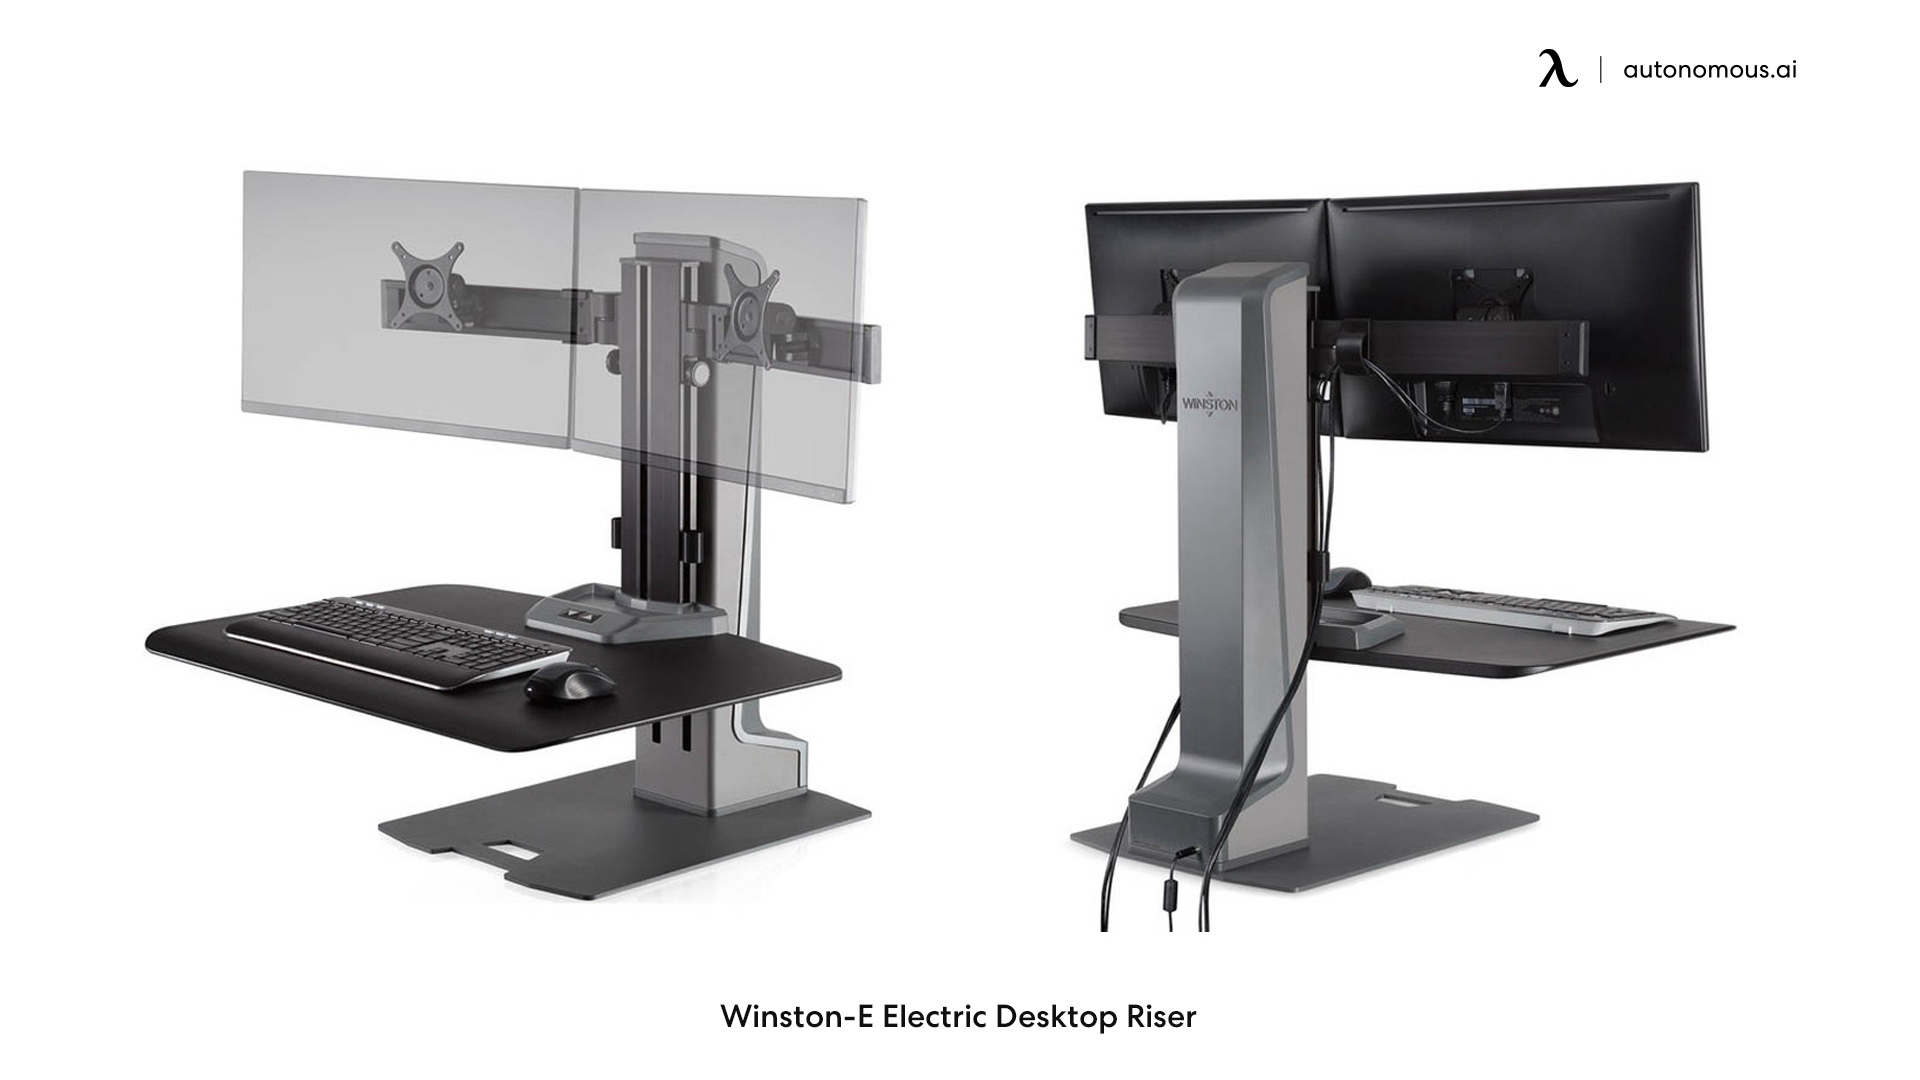 Winston-E electric desk riser